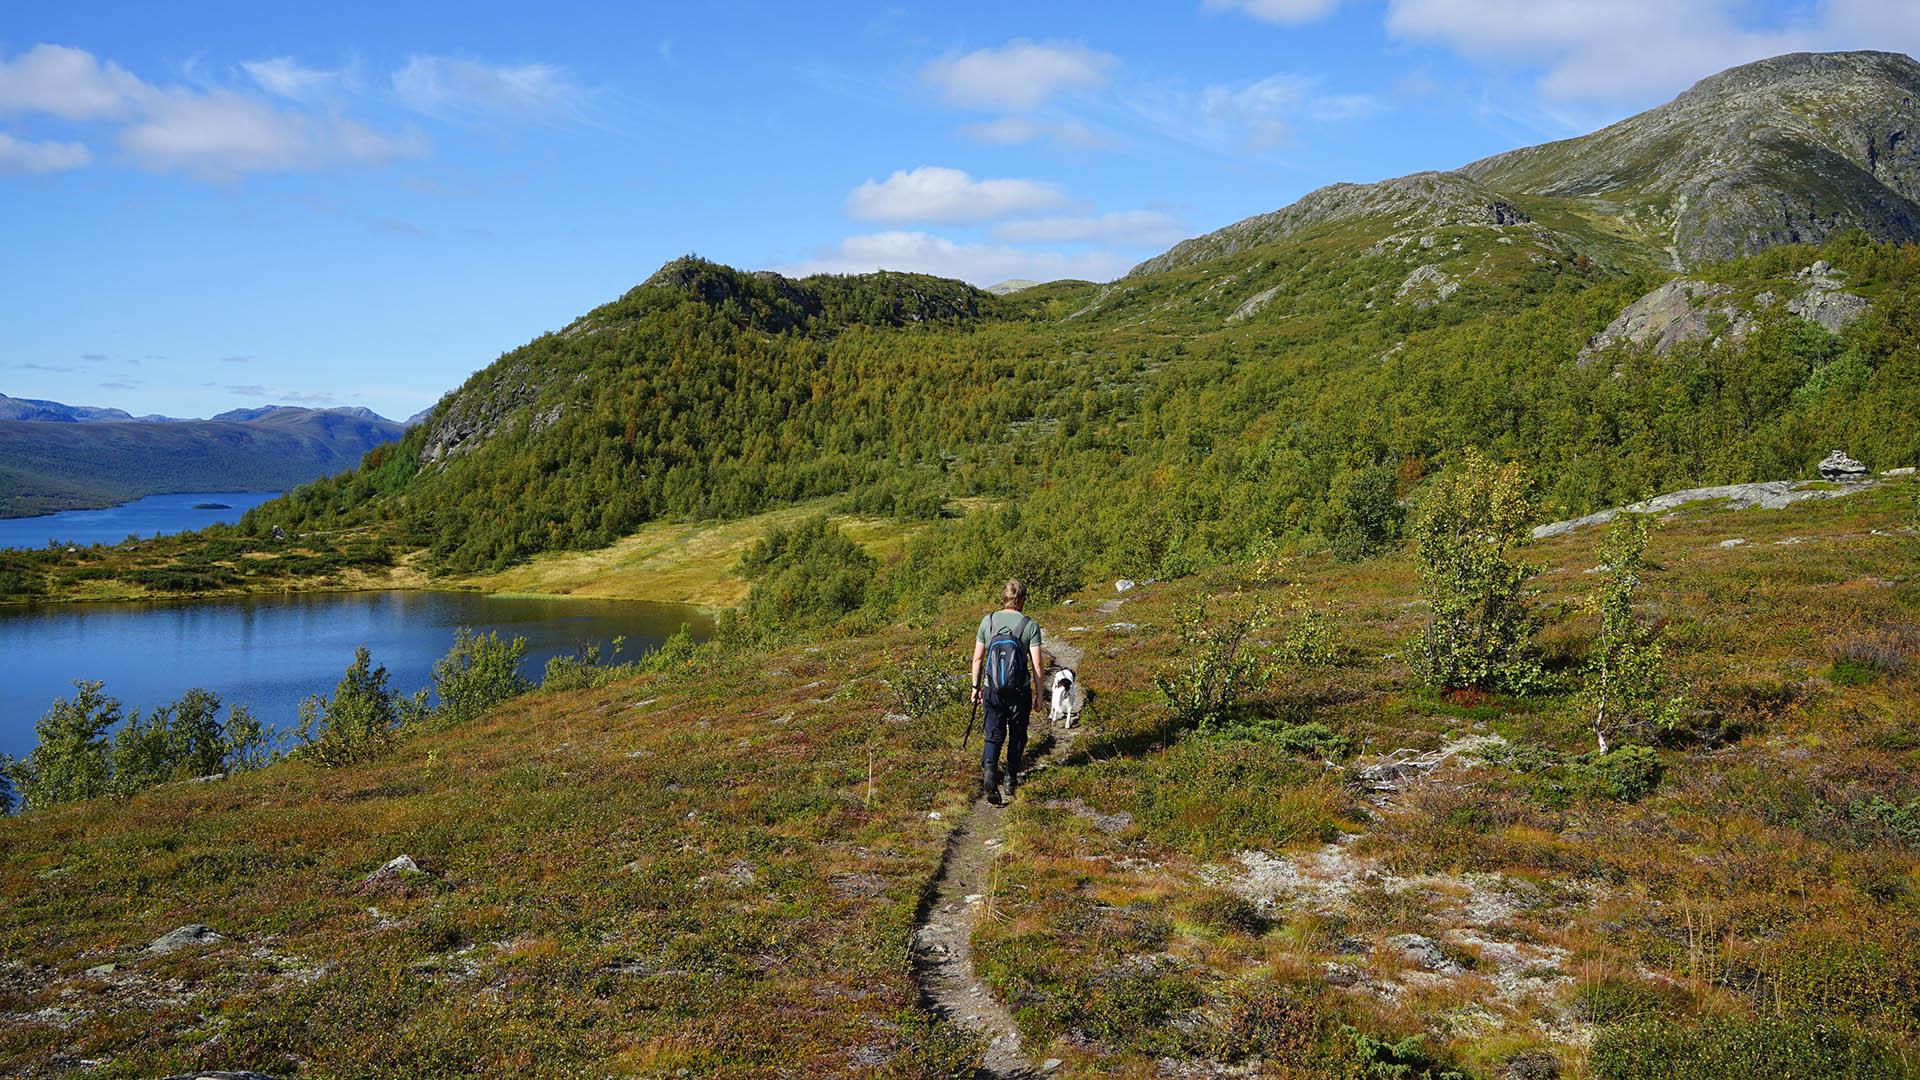 Eine Person mit Hund wandert auf einem Pfad durch Heidevegetation auf einen Berg zu. Zwei blaue Seen liegen am linken Bildrand. Blauer Himmel.